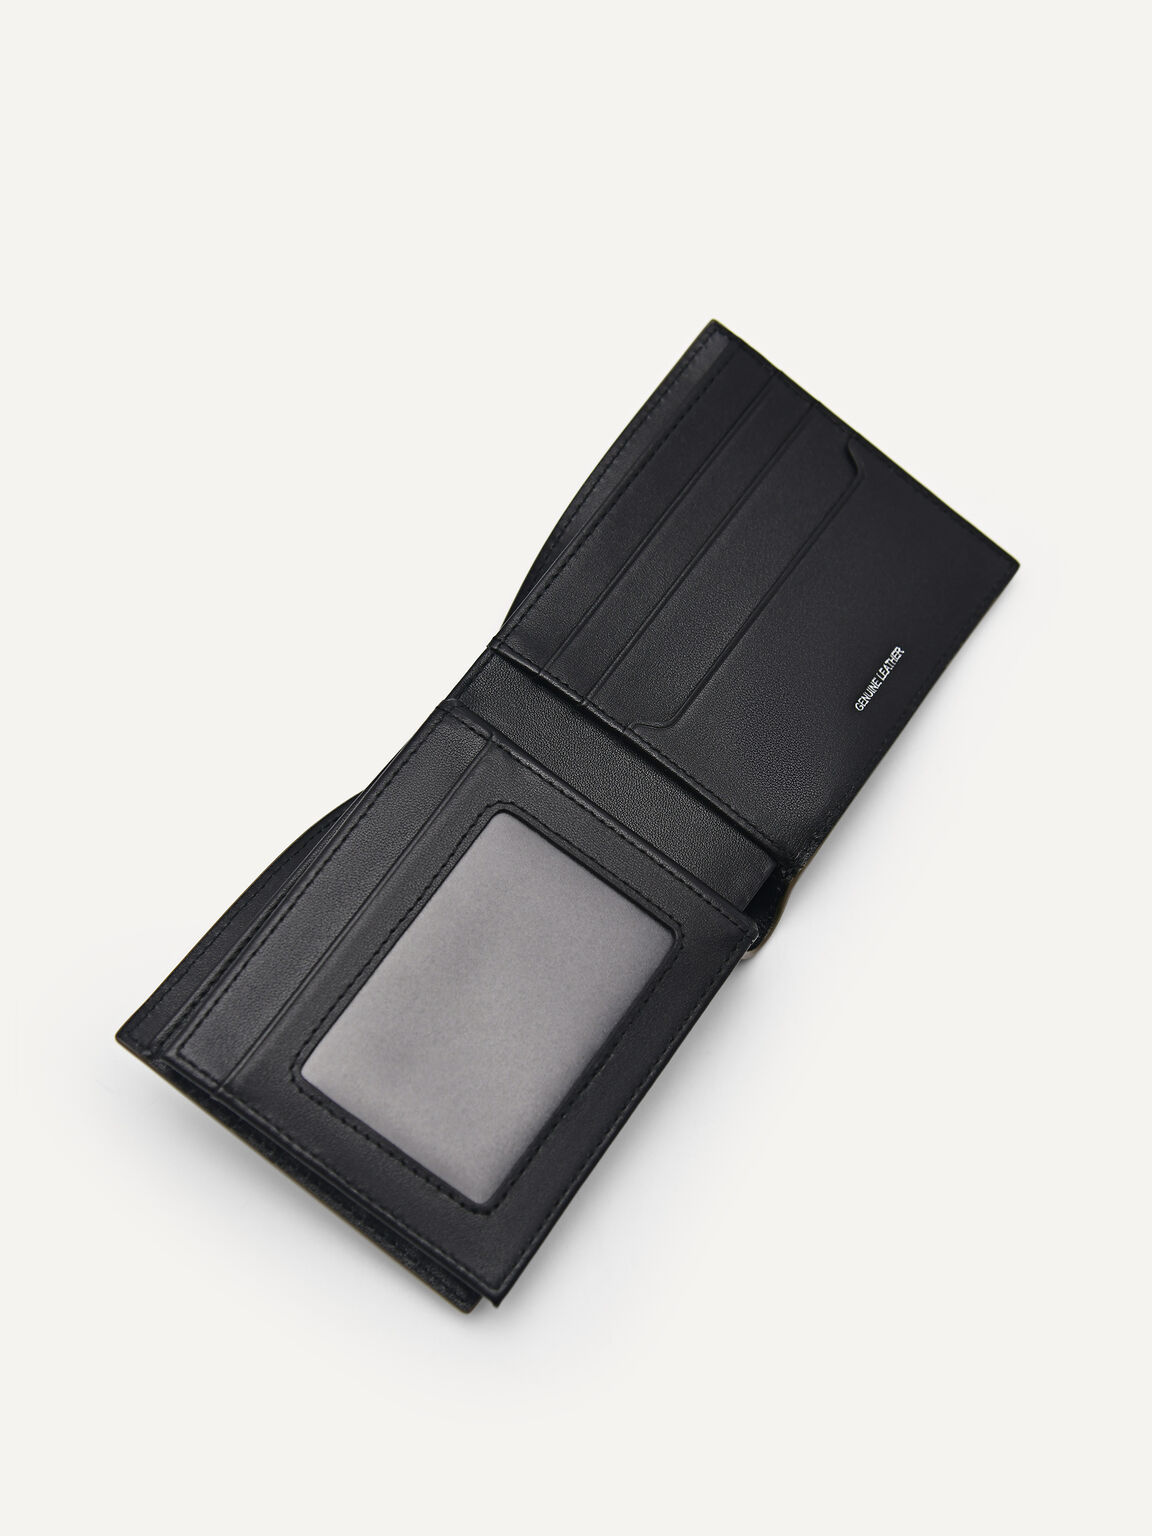 Embossed Leather Bi-Fold Flip Wallet, Olive